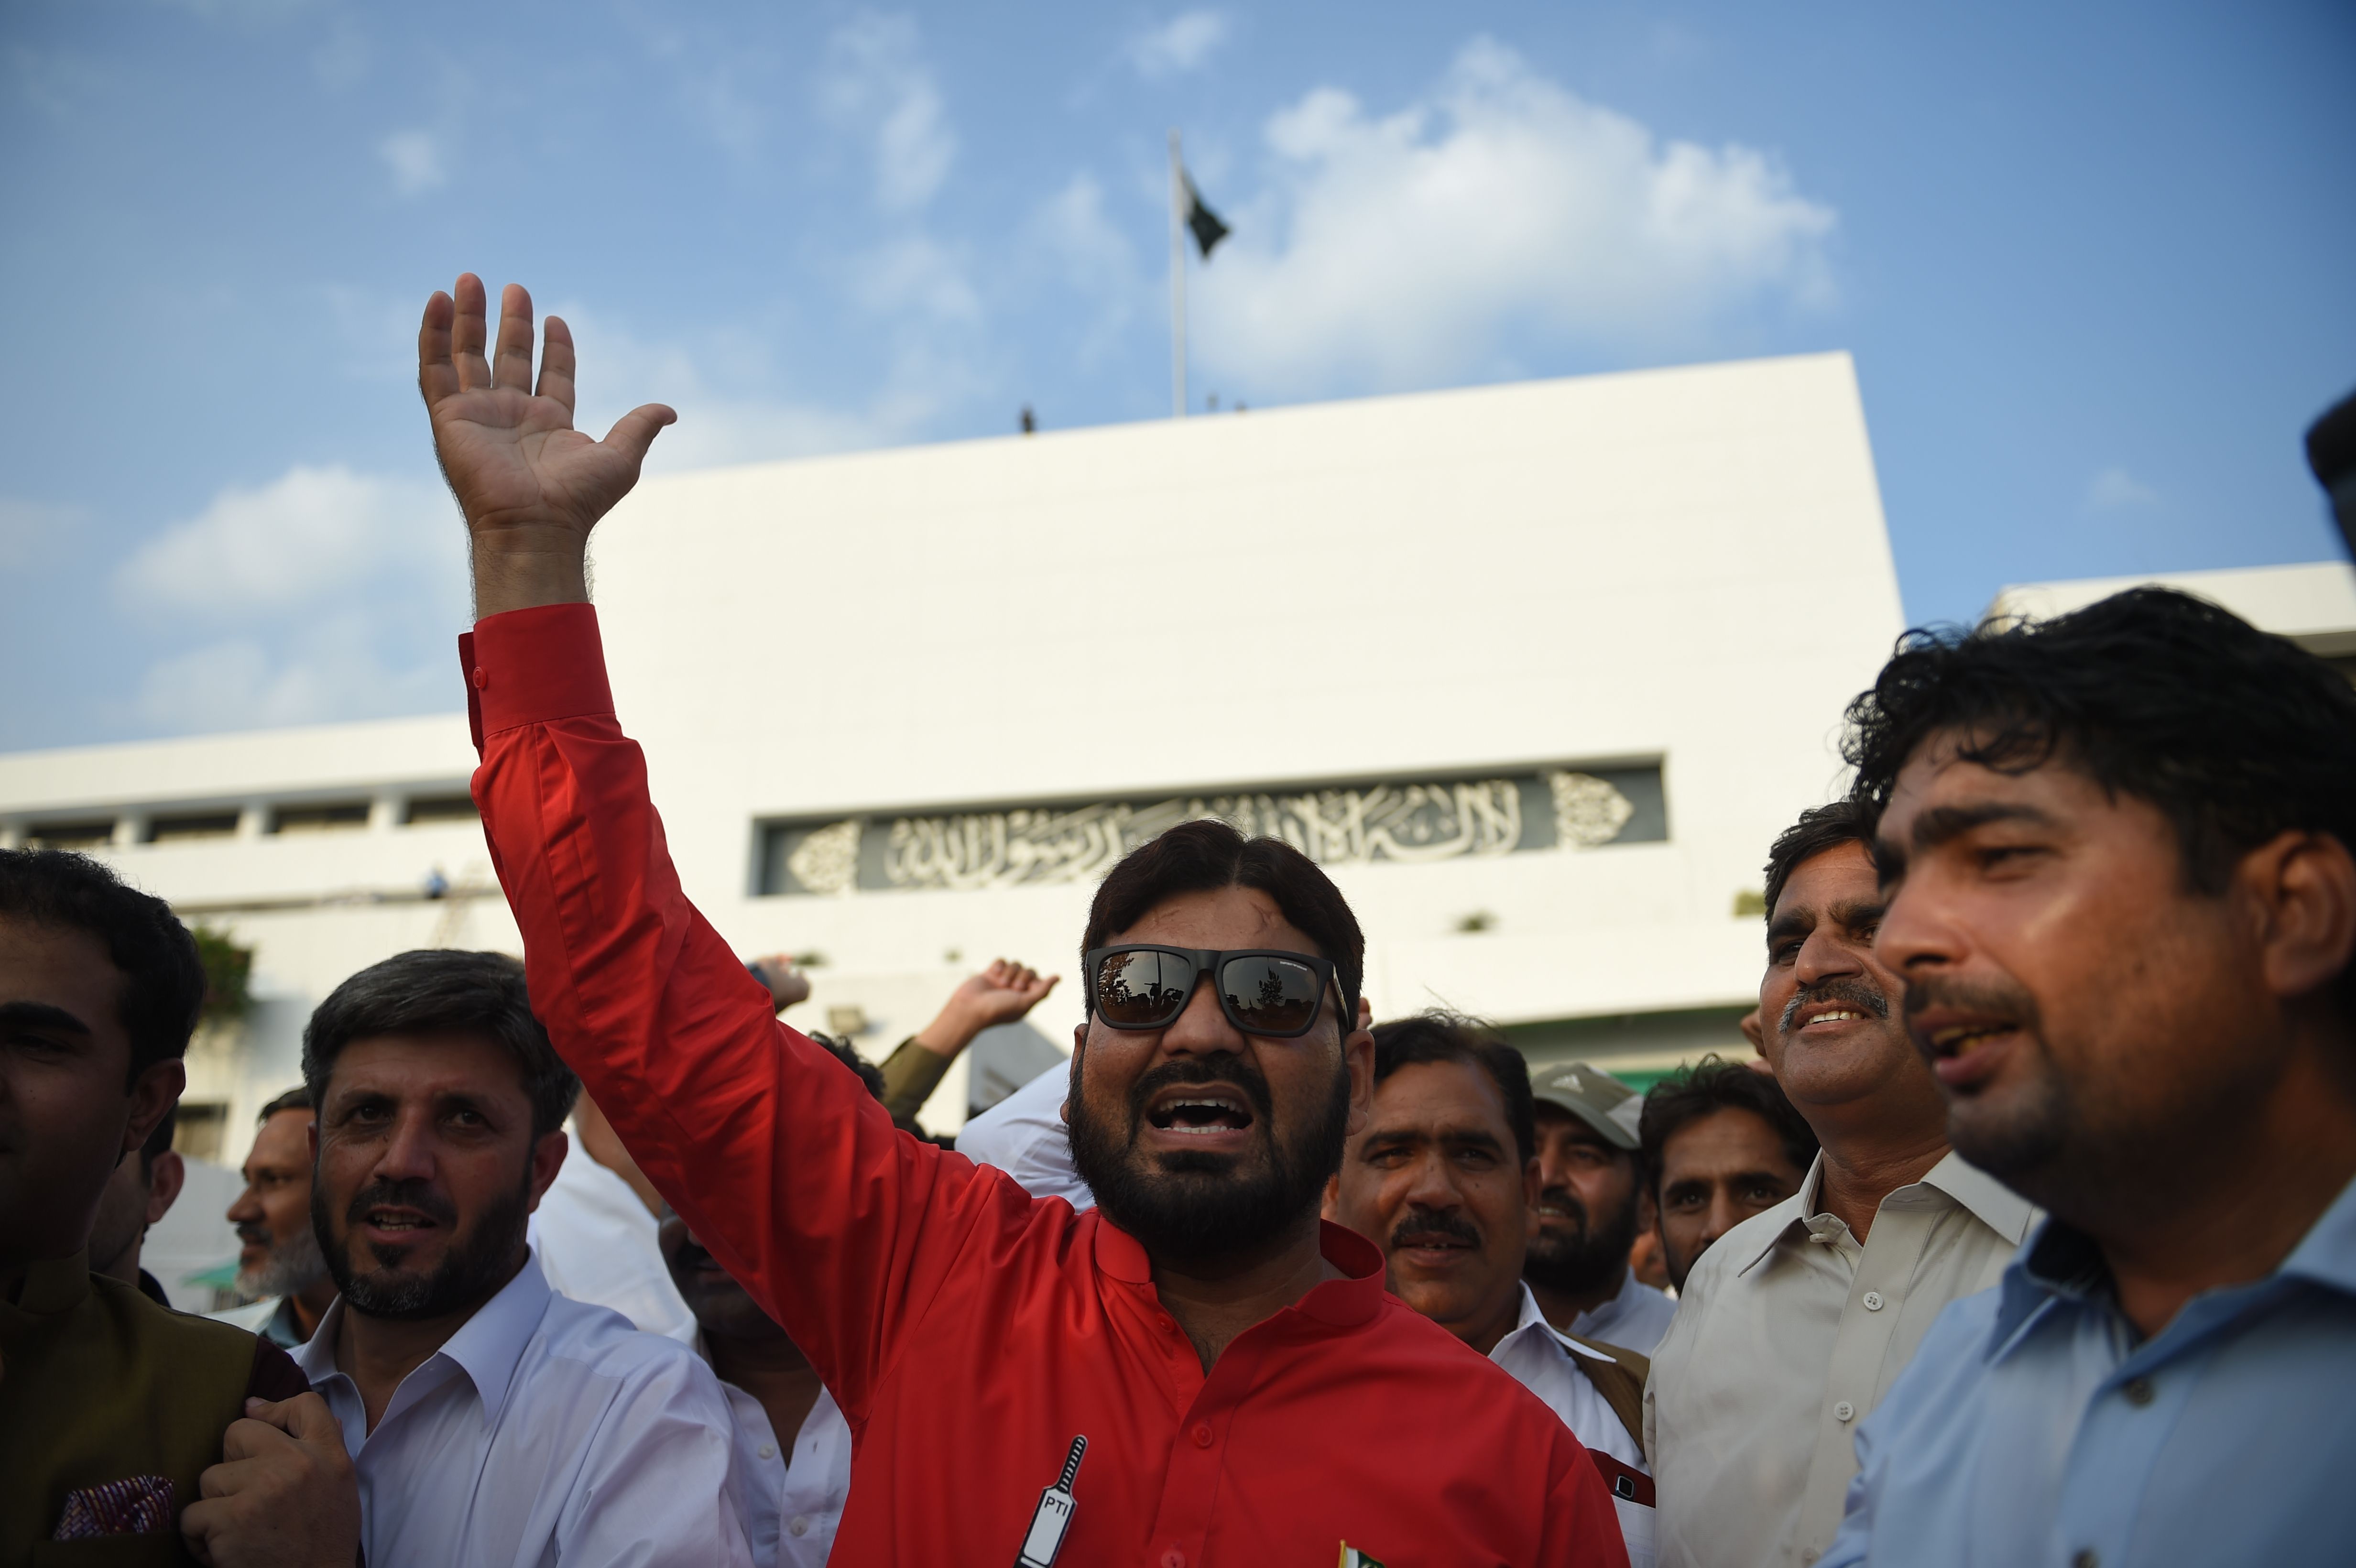 باكستانيين يعبرون عن فرحتهم بترديد شعارات مؤيدة لرئيس الوزراء الجديد